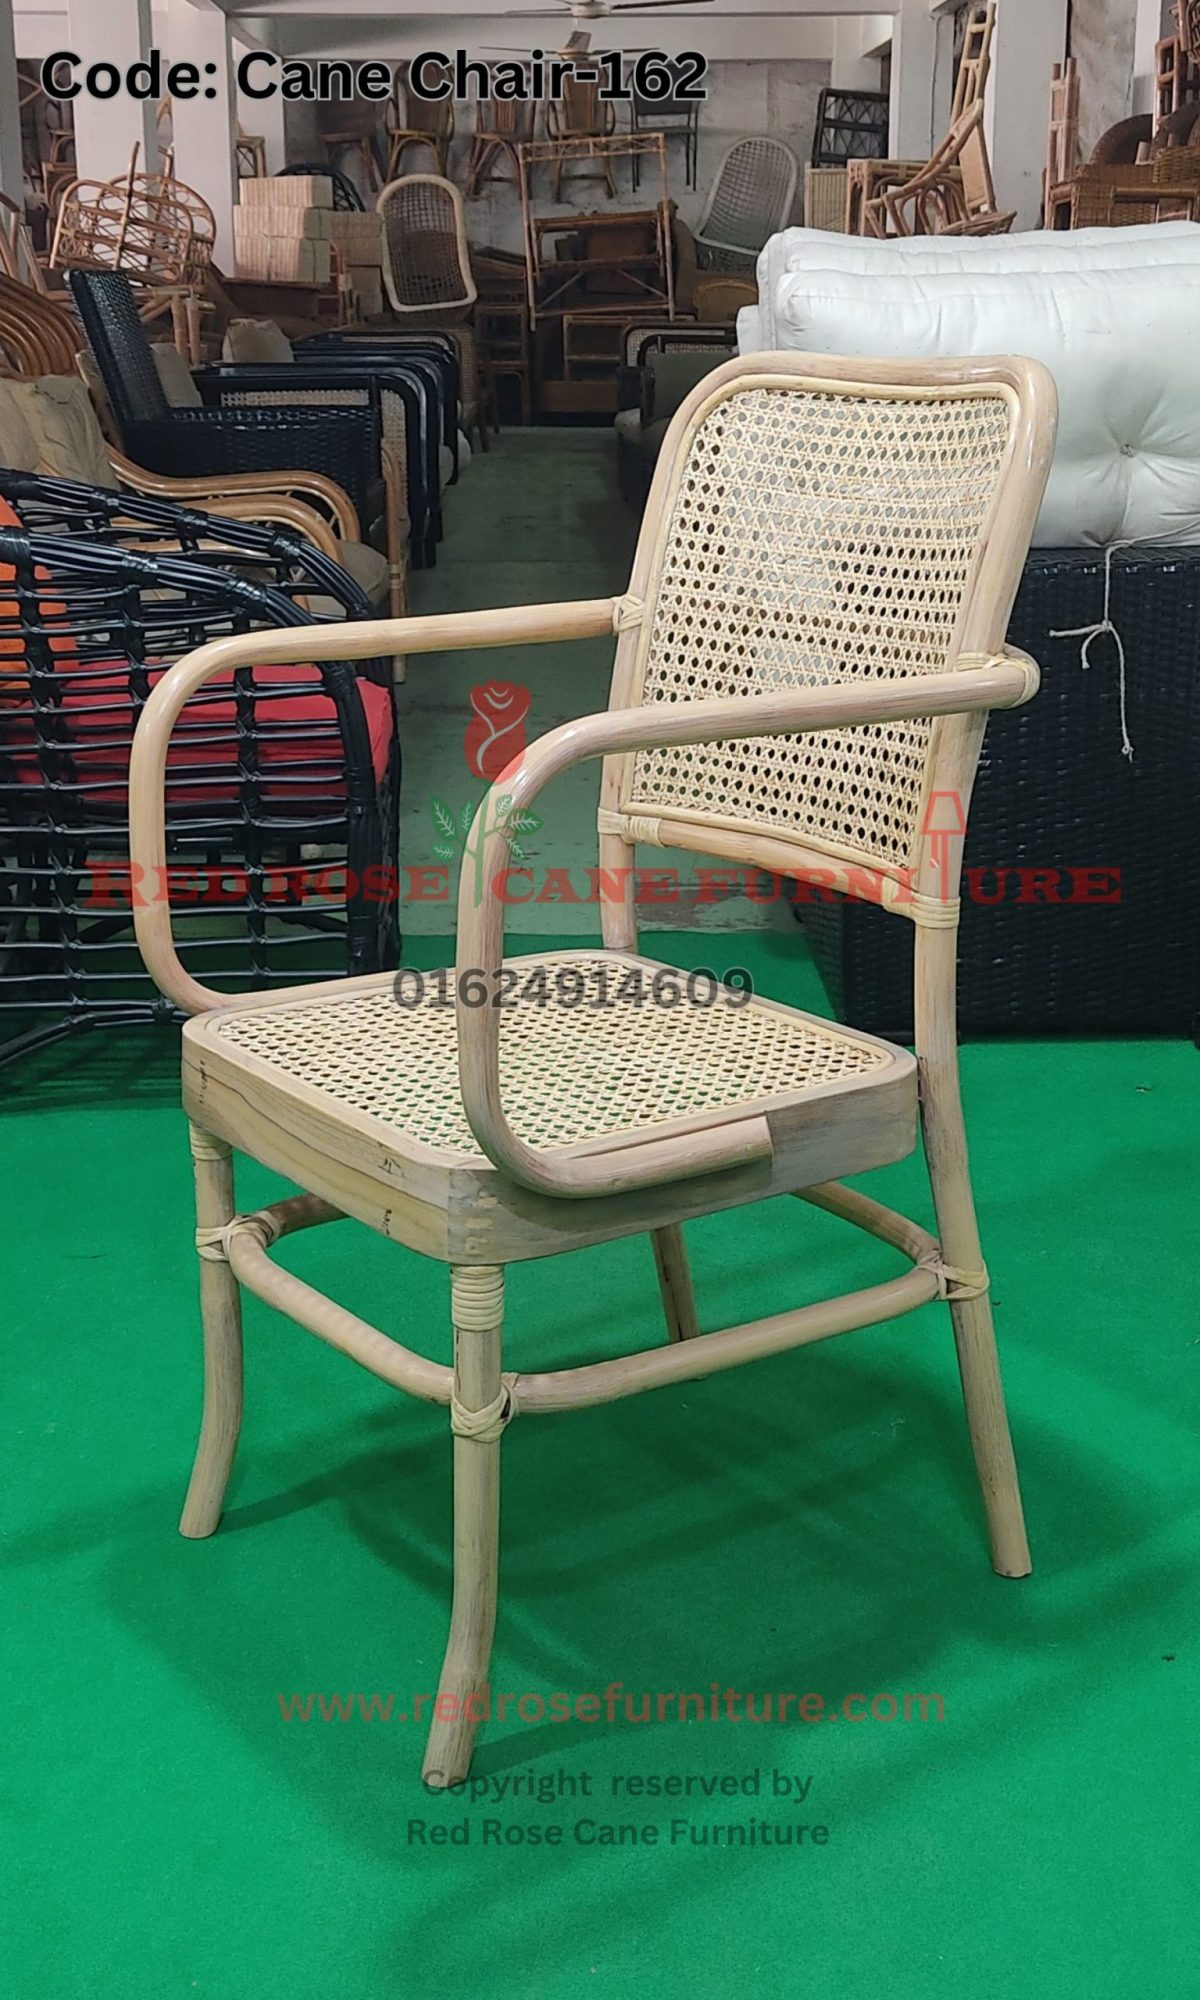 Cane Chair-162